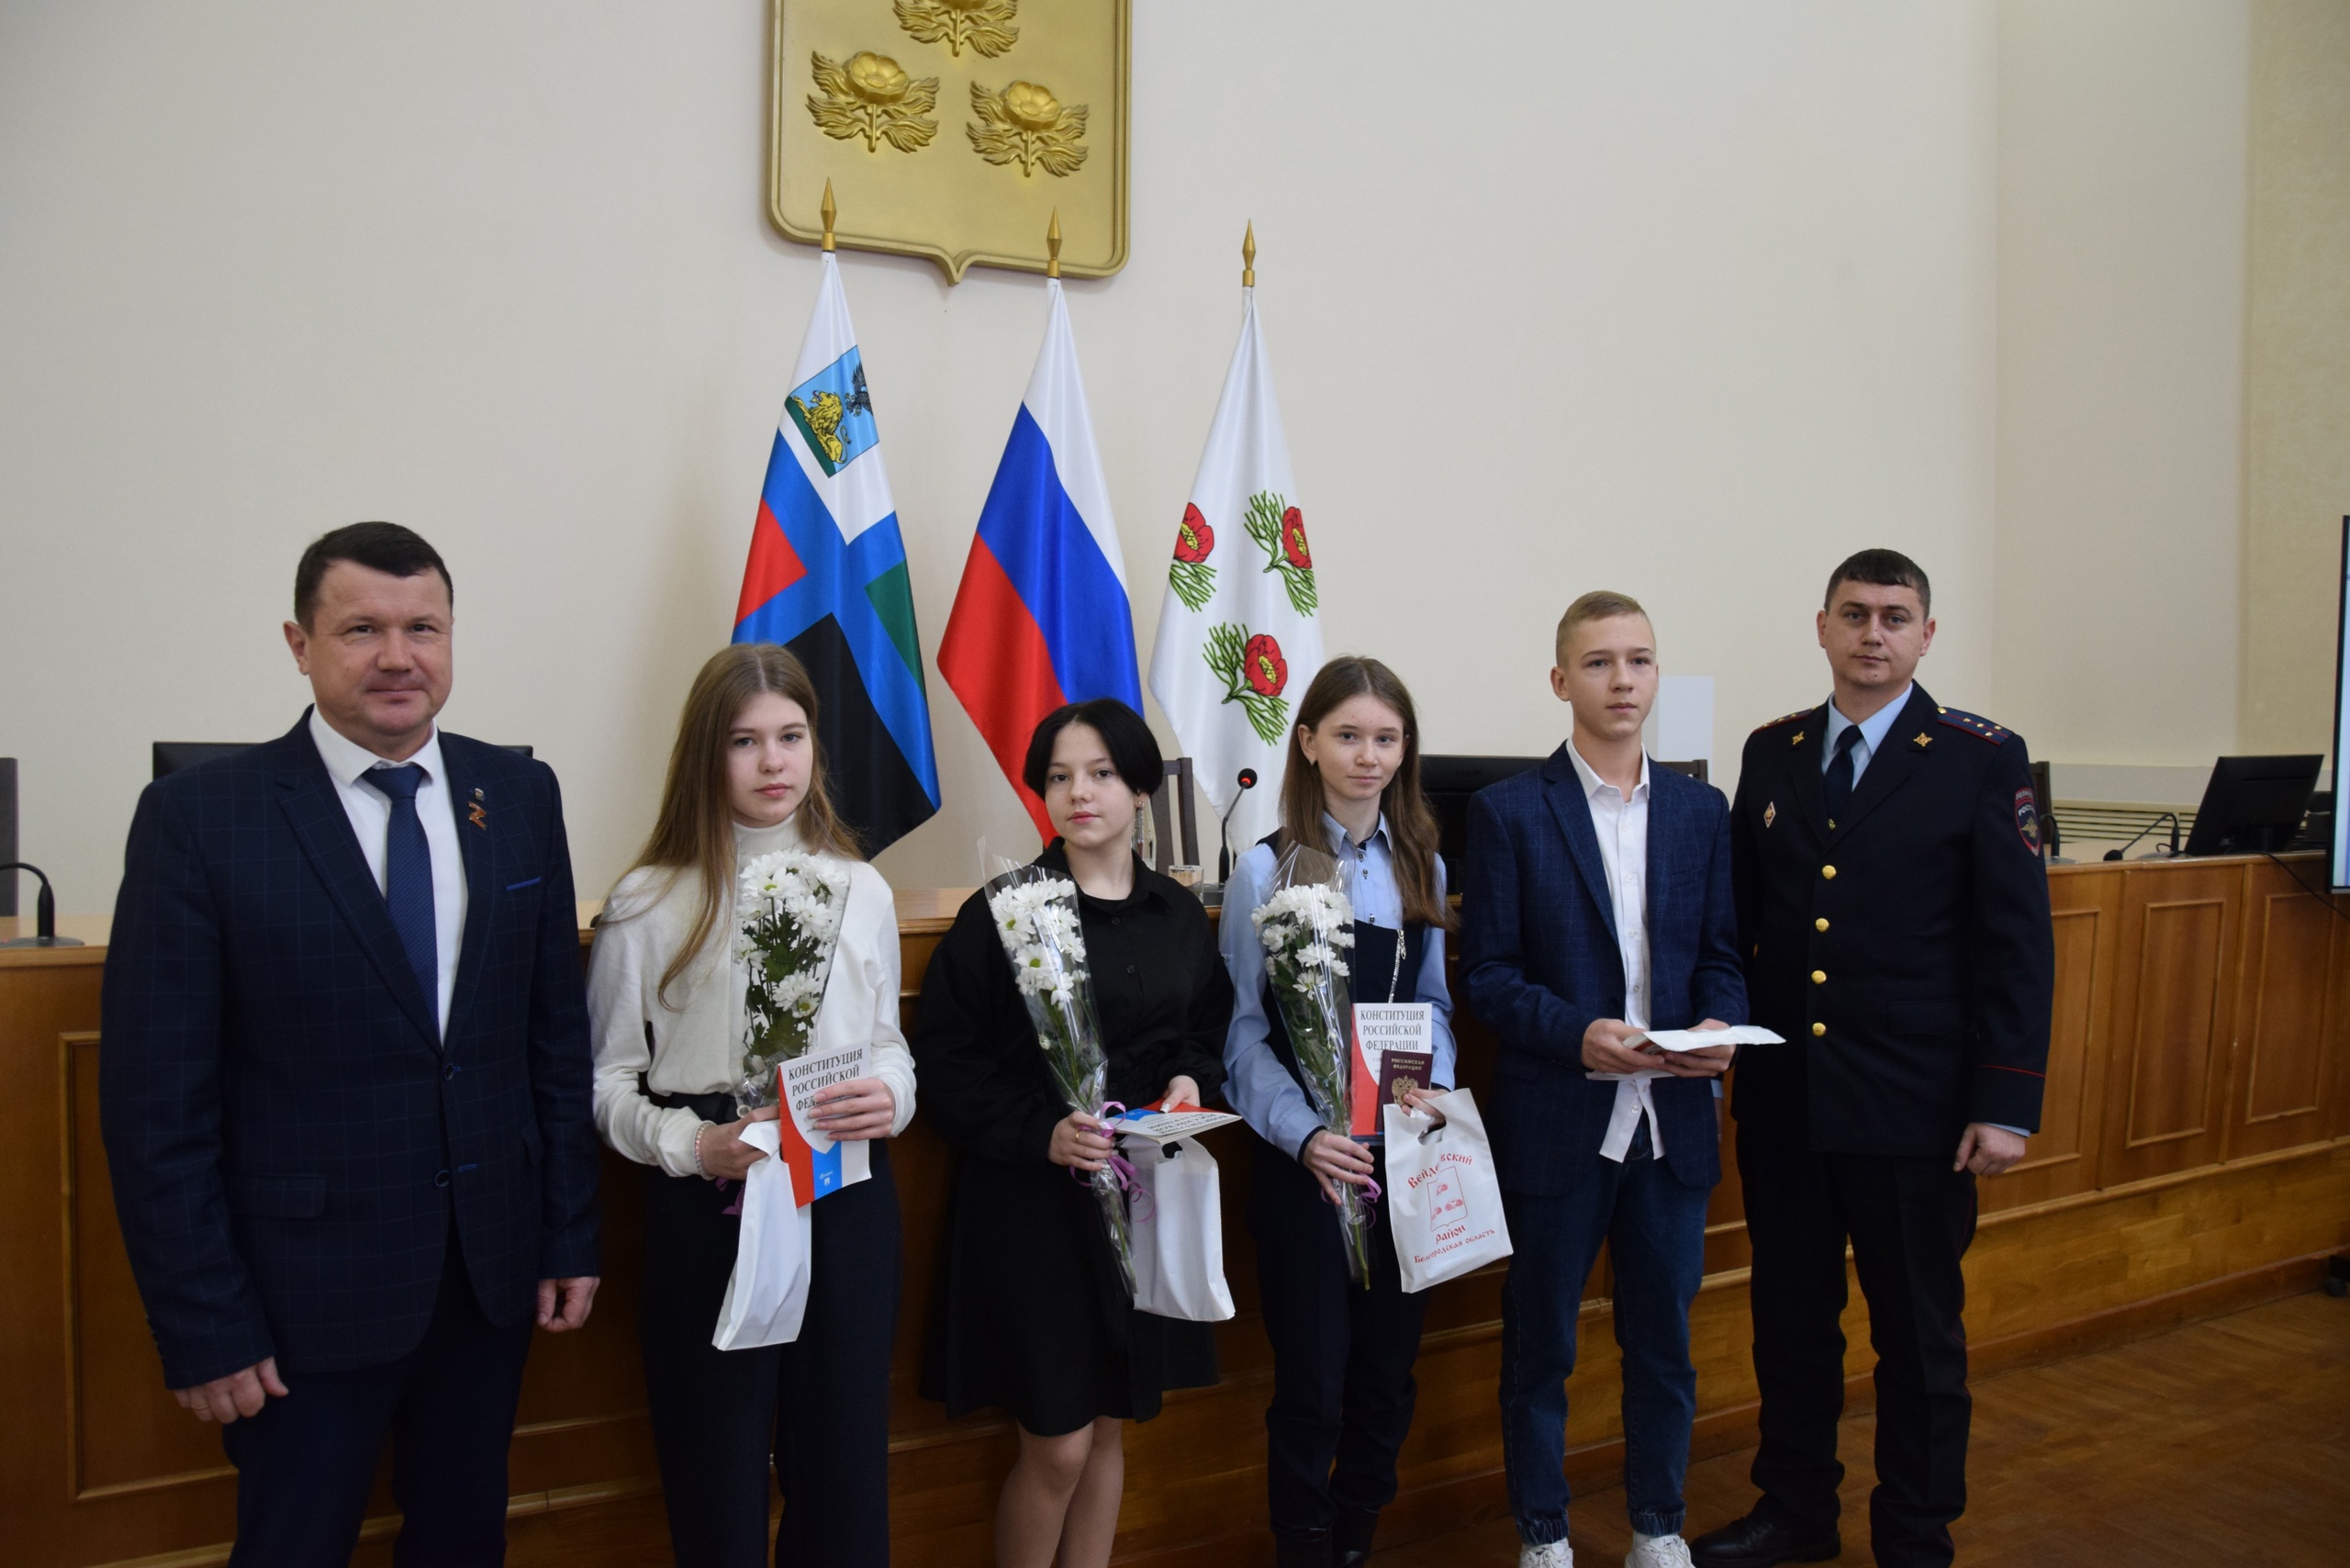 Четверо юных жителей Вейделевского района получили свой главный документ – паспорт гражданина Российской Федерации.